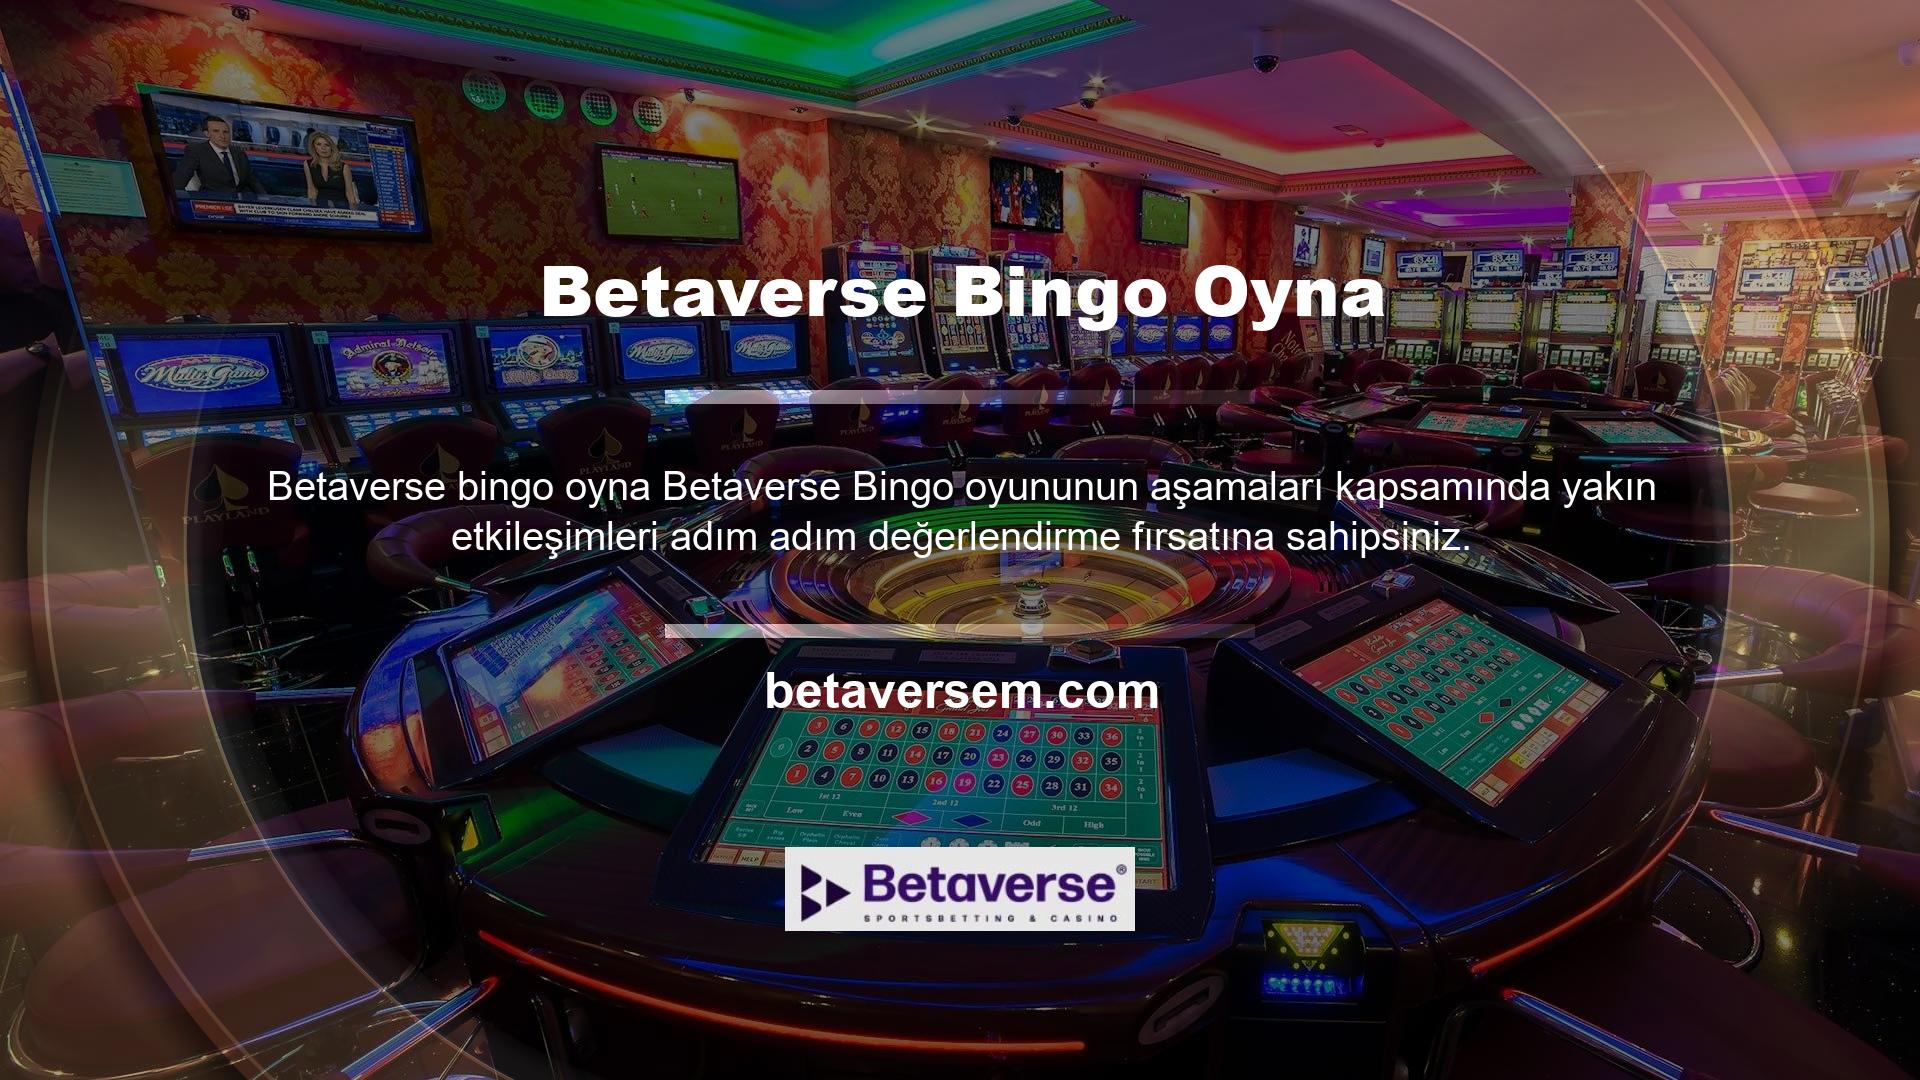 Betaverse Bingo oyun modeli ve detaylı etkileşimler sayesinde birçok sebep aktif düzeyde aktarılabilmektedir